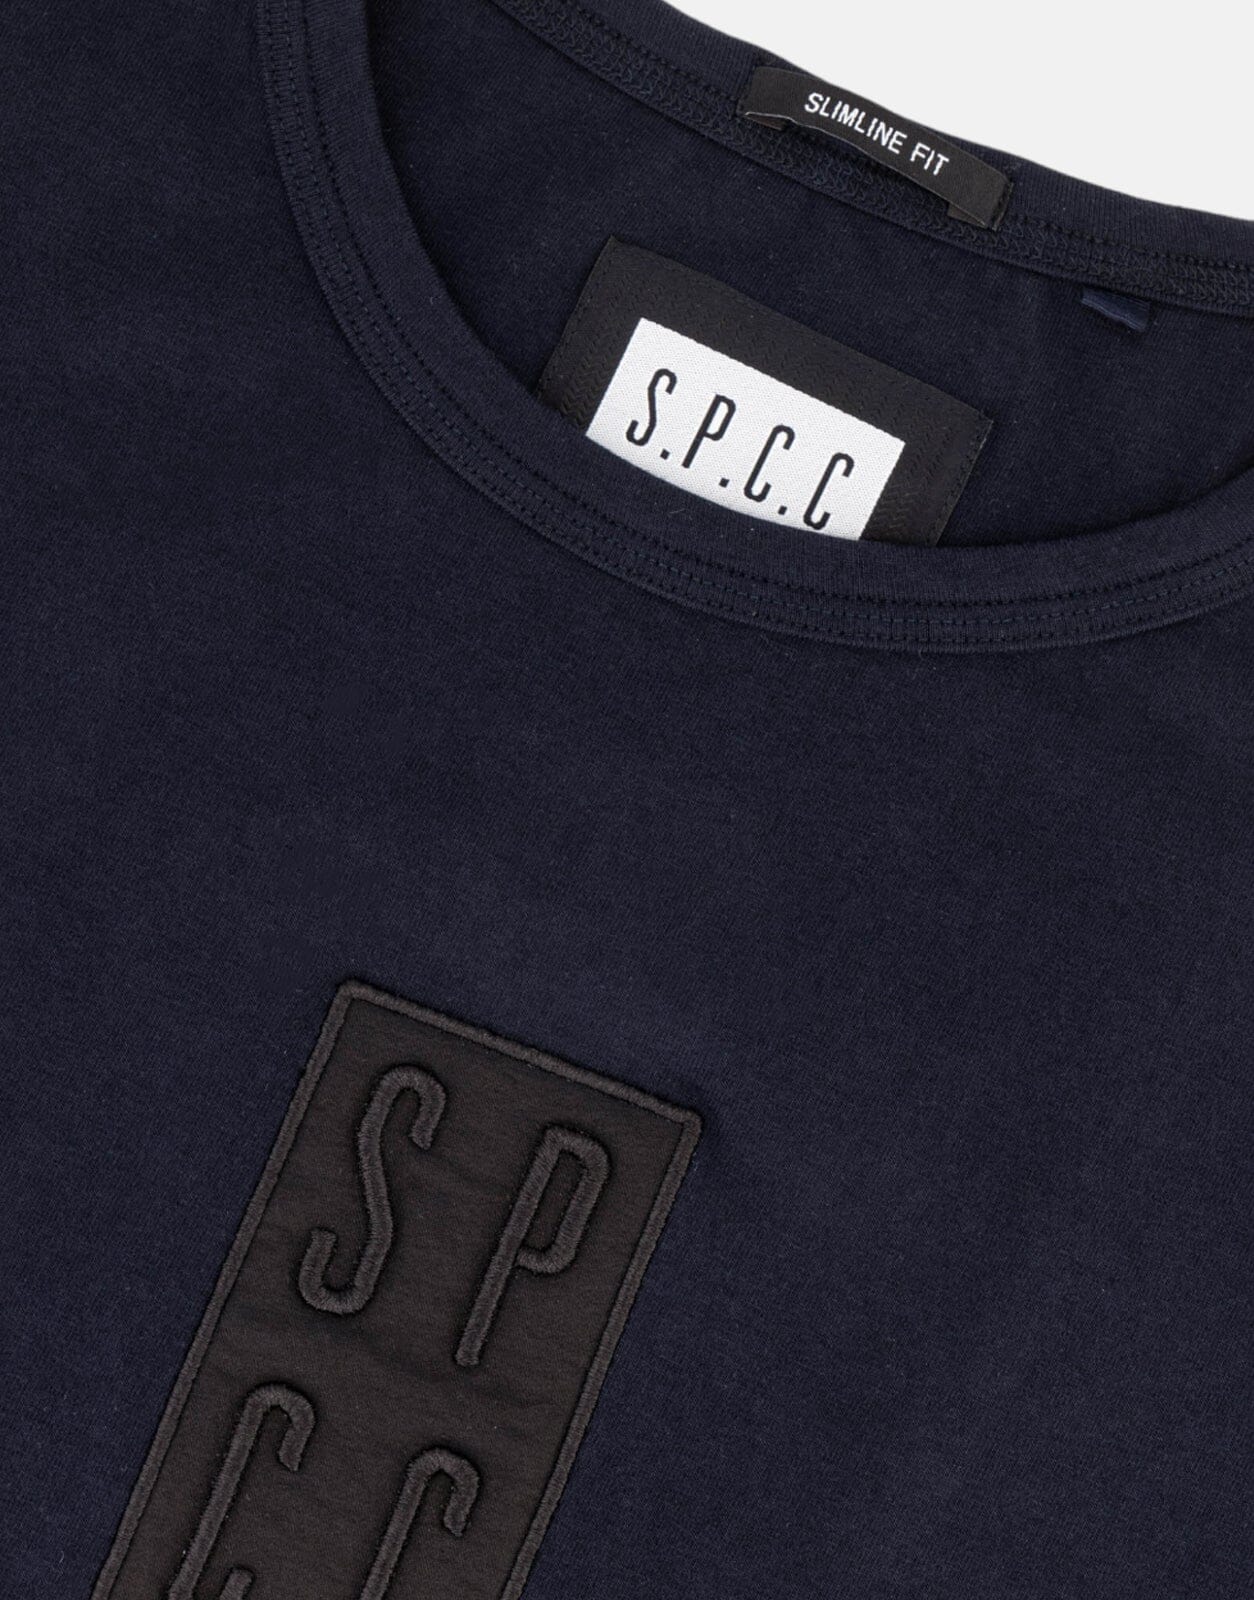 SPCC Hockley Navy T-Shirt - Subwear